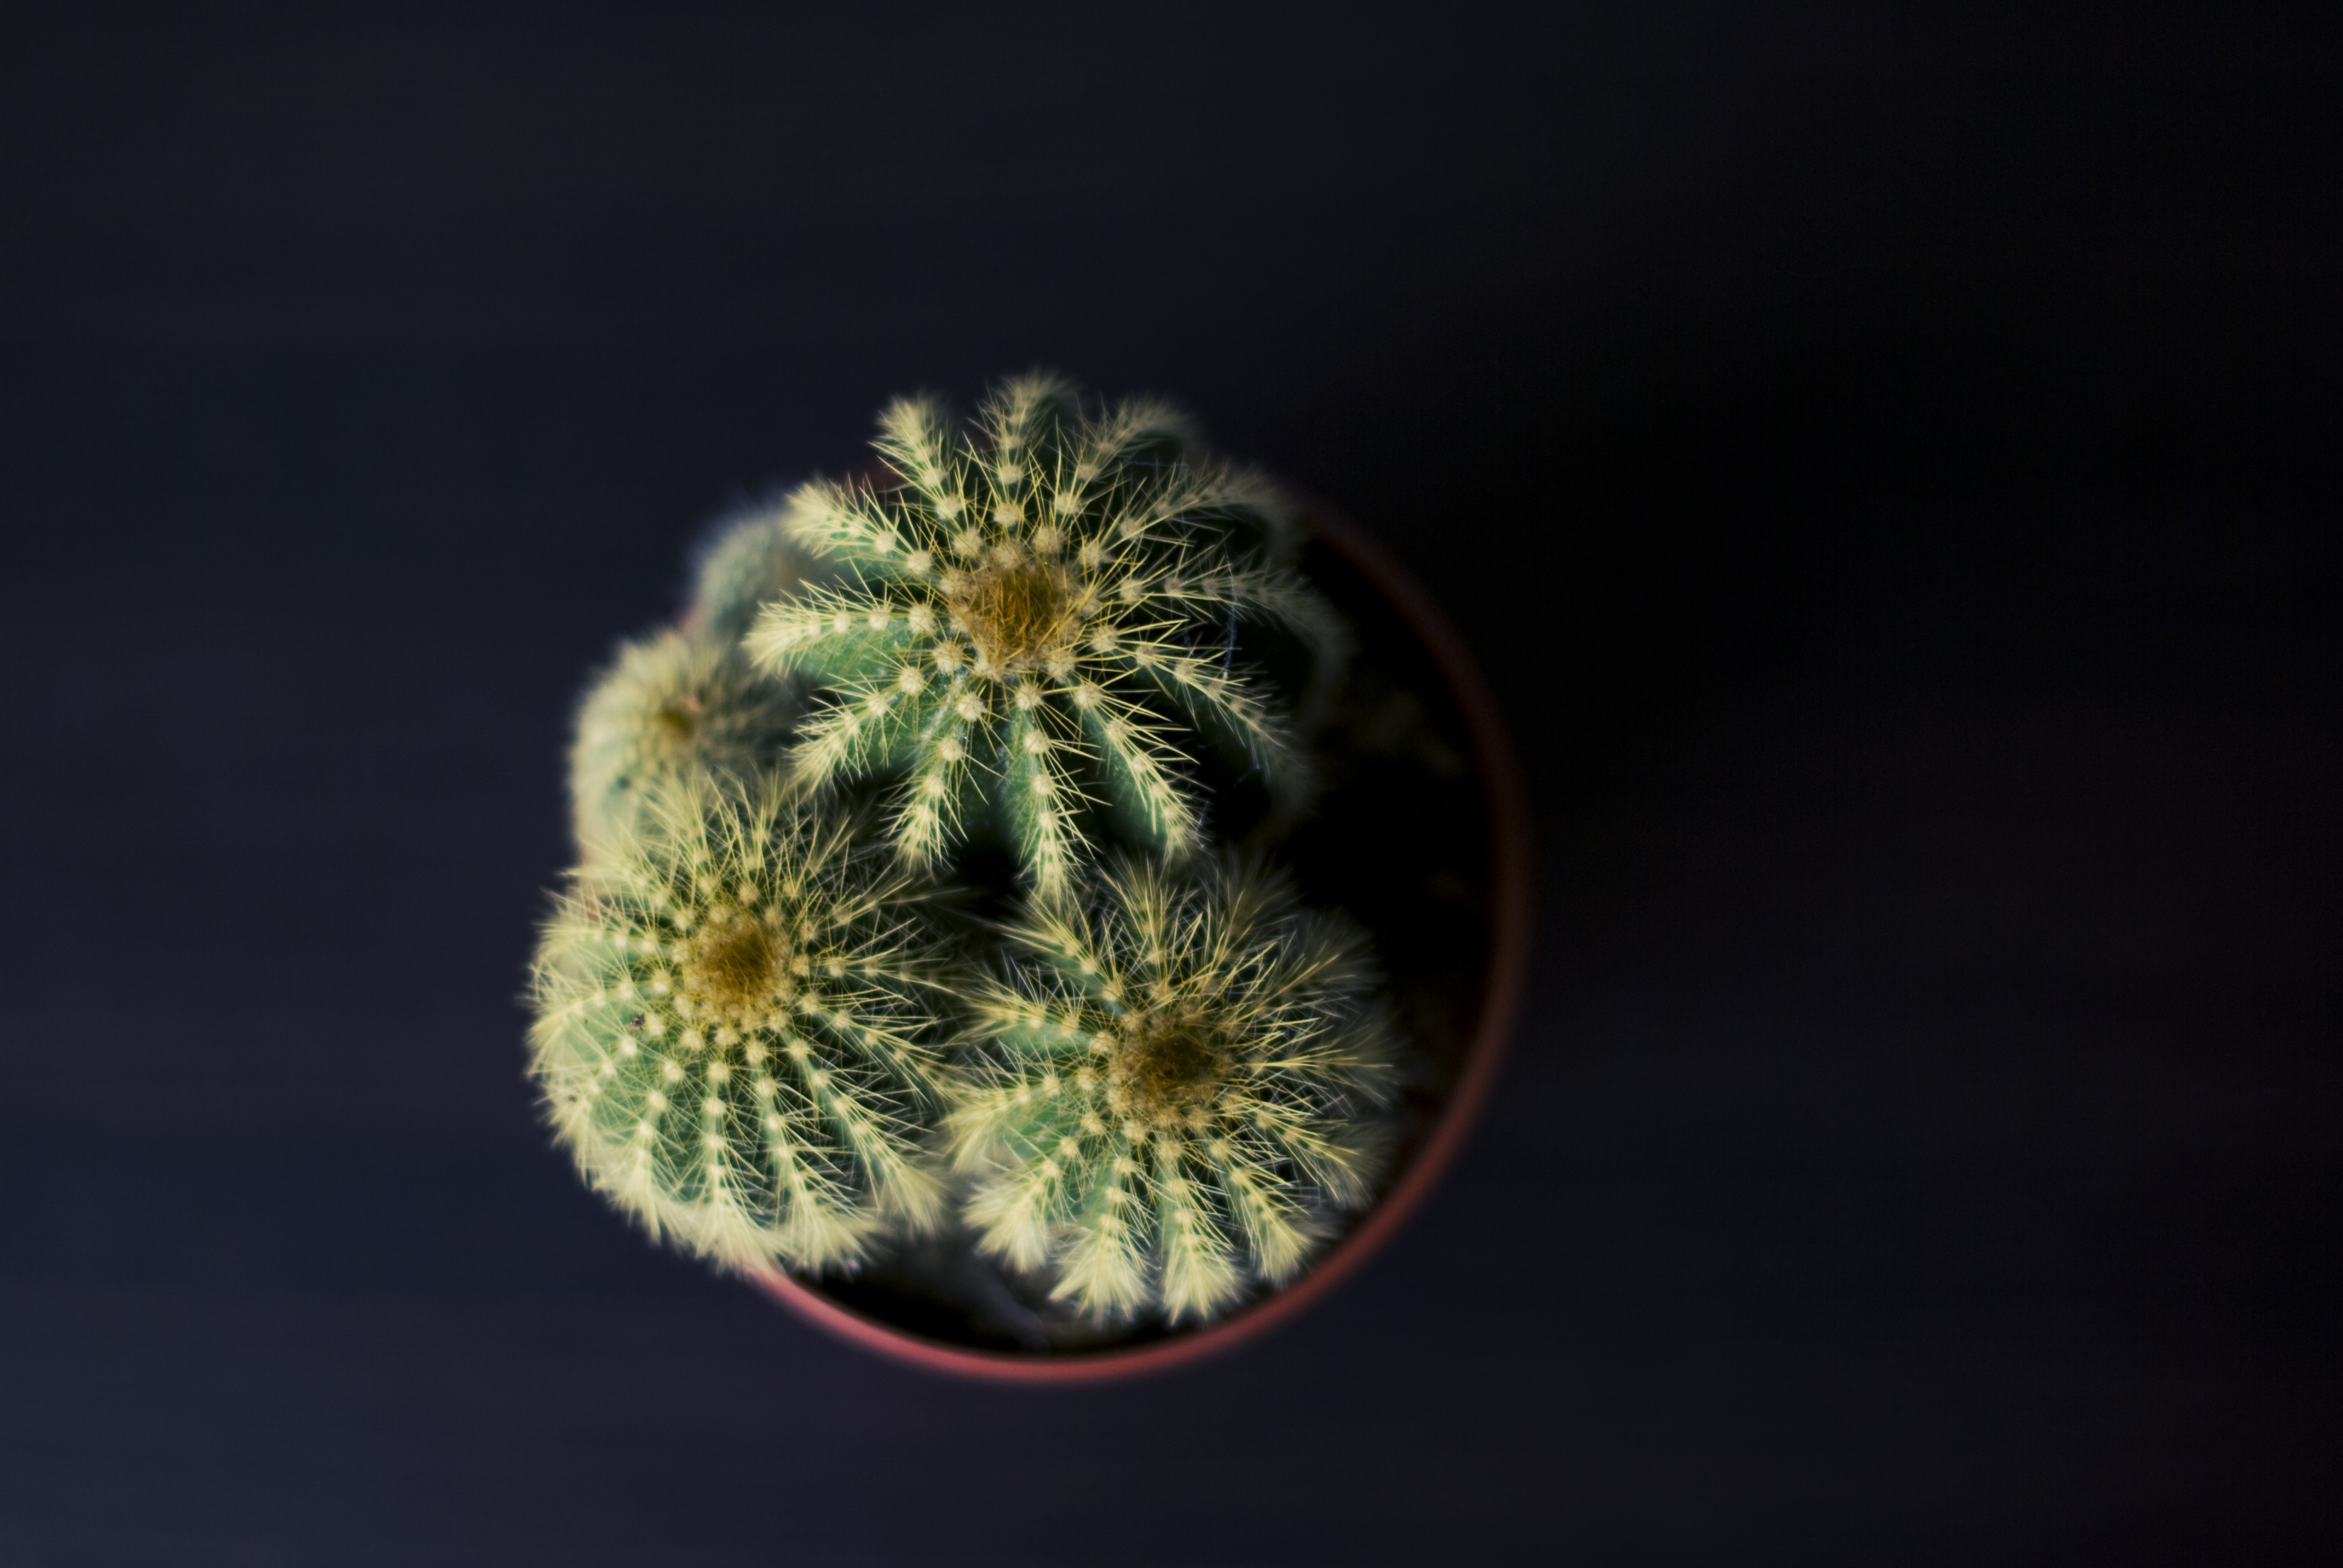 tilt shift lens photography of cactus plant